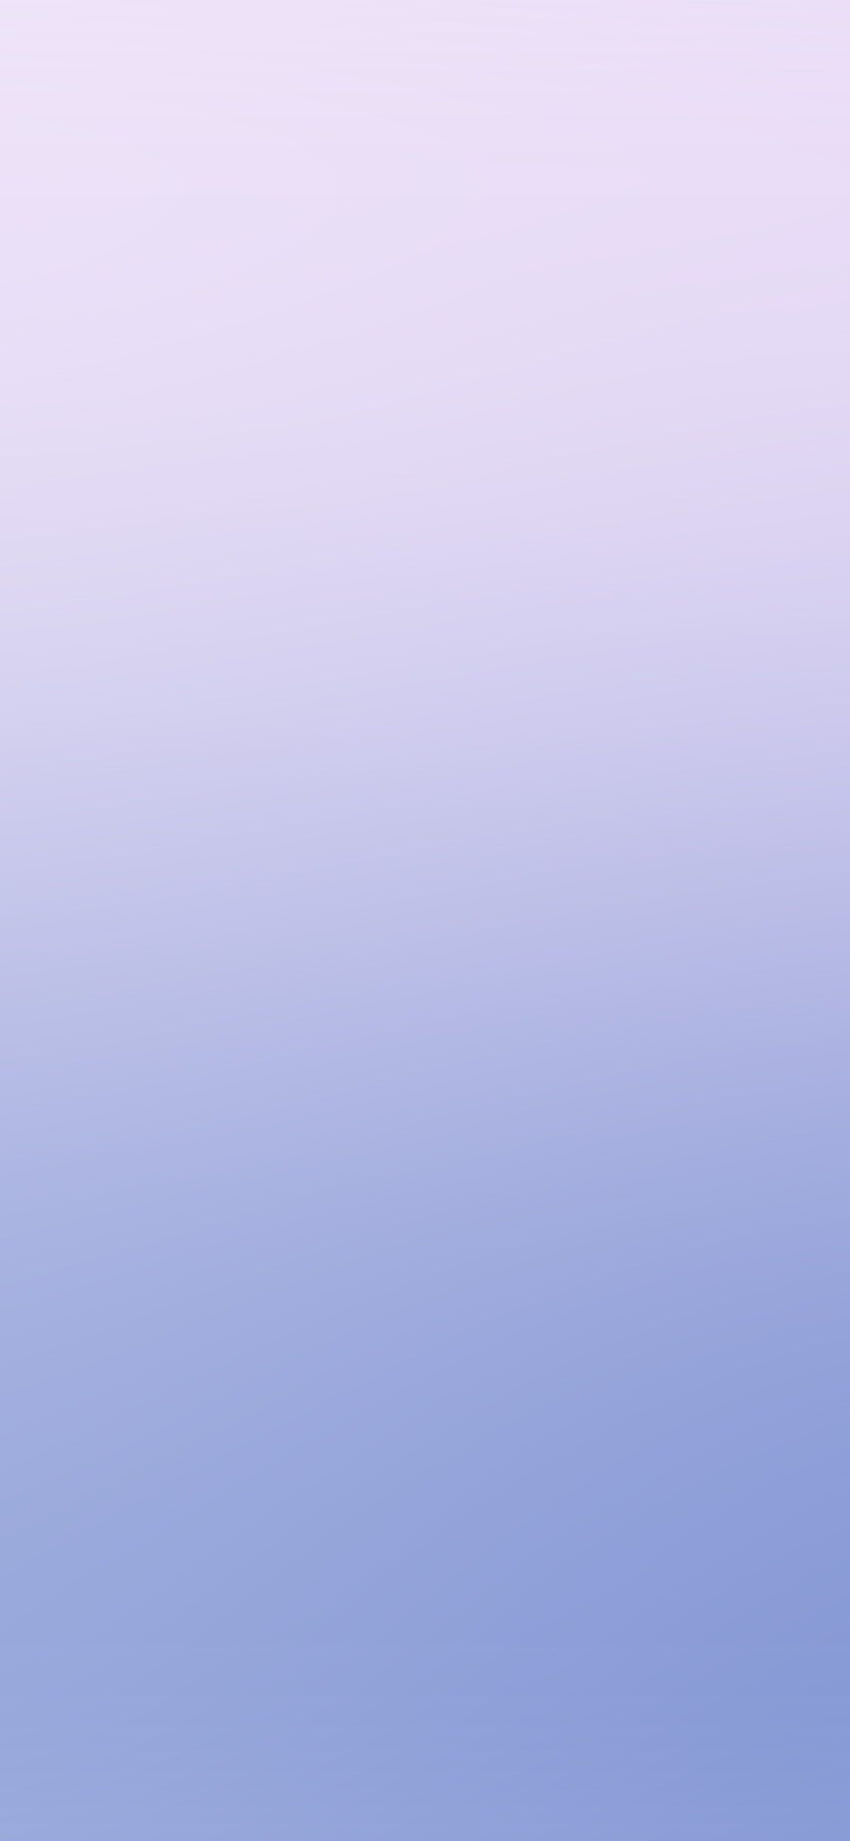 iPhone X. weiche pastellblaue Unschärfeabstufung, pastellblauer Farbverlauf HD-Handy-Hintergrundbild